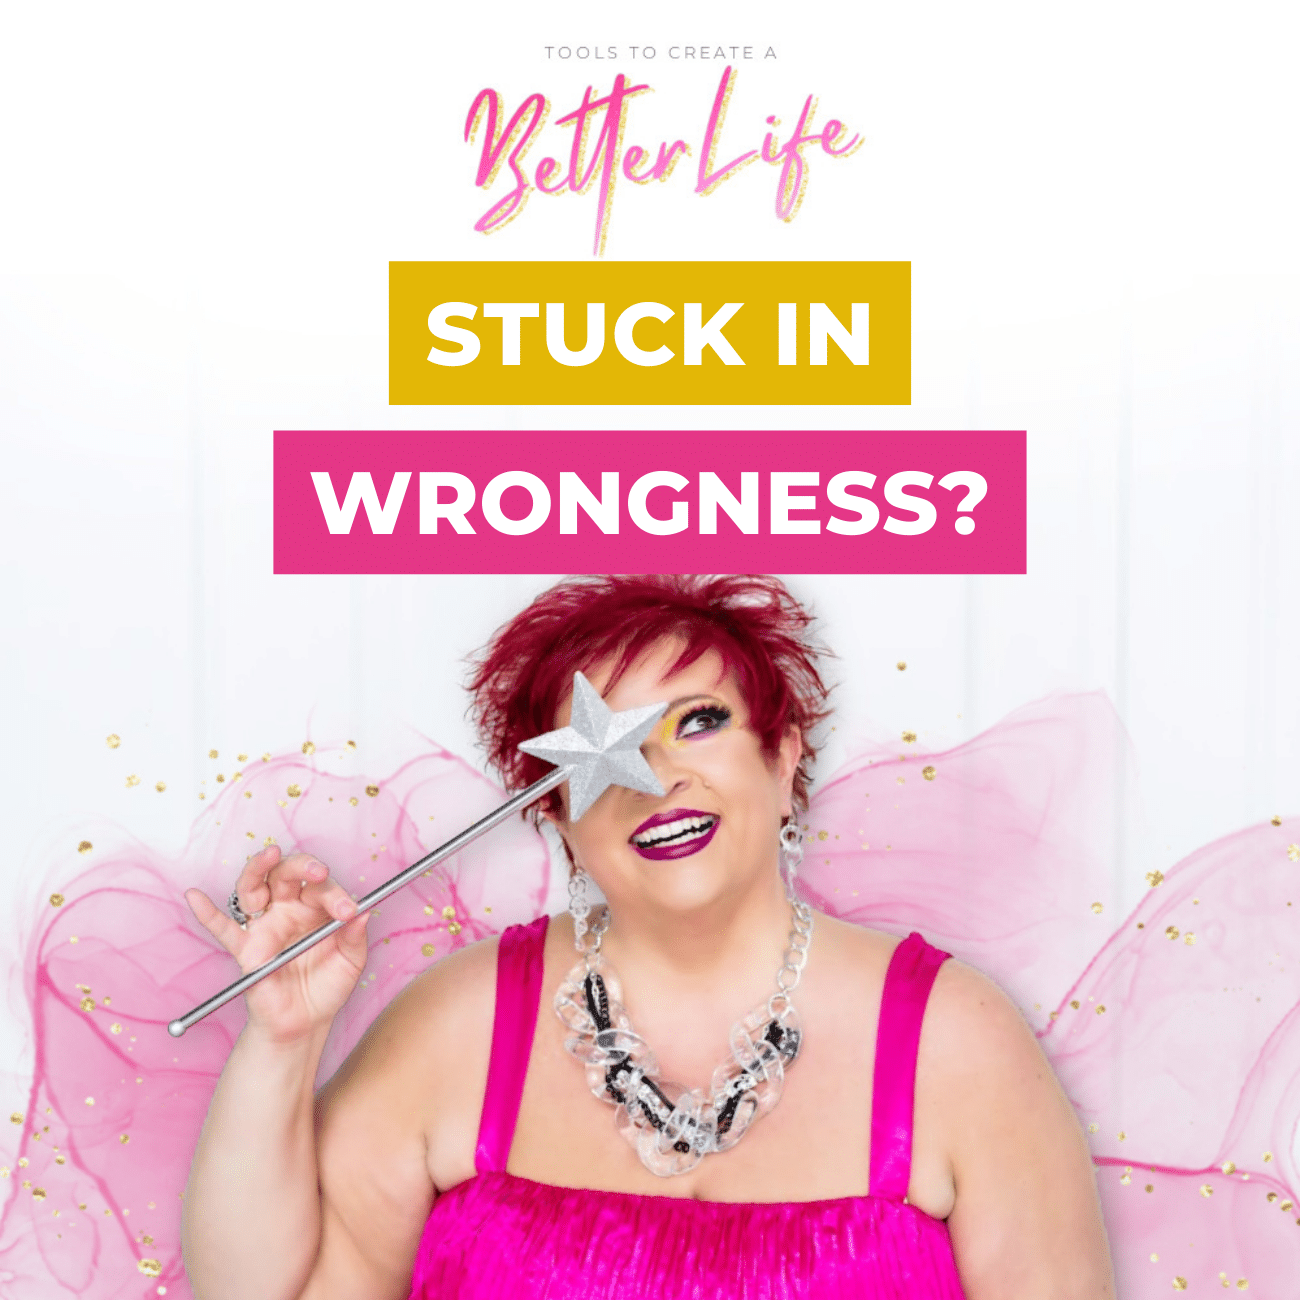 Stuck in Wrongness?